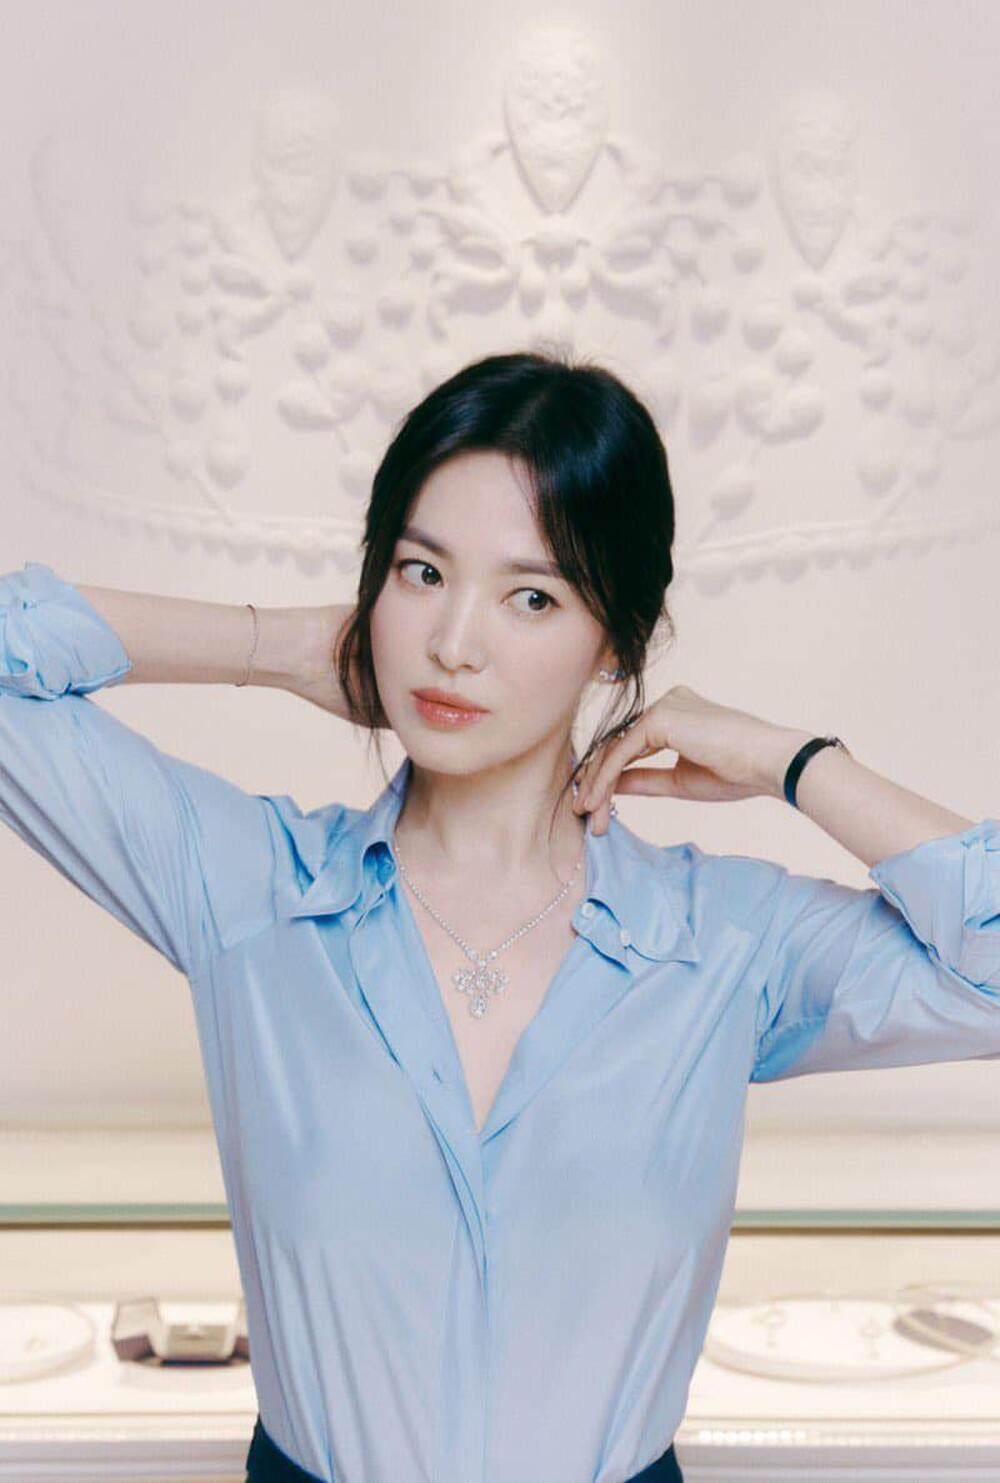 Chaumet đã chứng minh sự đúng đắn của nhãn hàng khi chọn Song Hye Kyo trở thành đại sứ thương hiệu của hãng, bởi hiệu ứng thị trường cô tạo ra là rất khả quan.